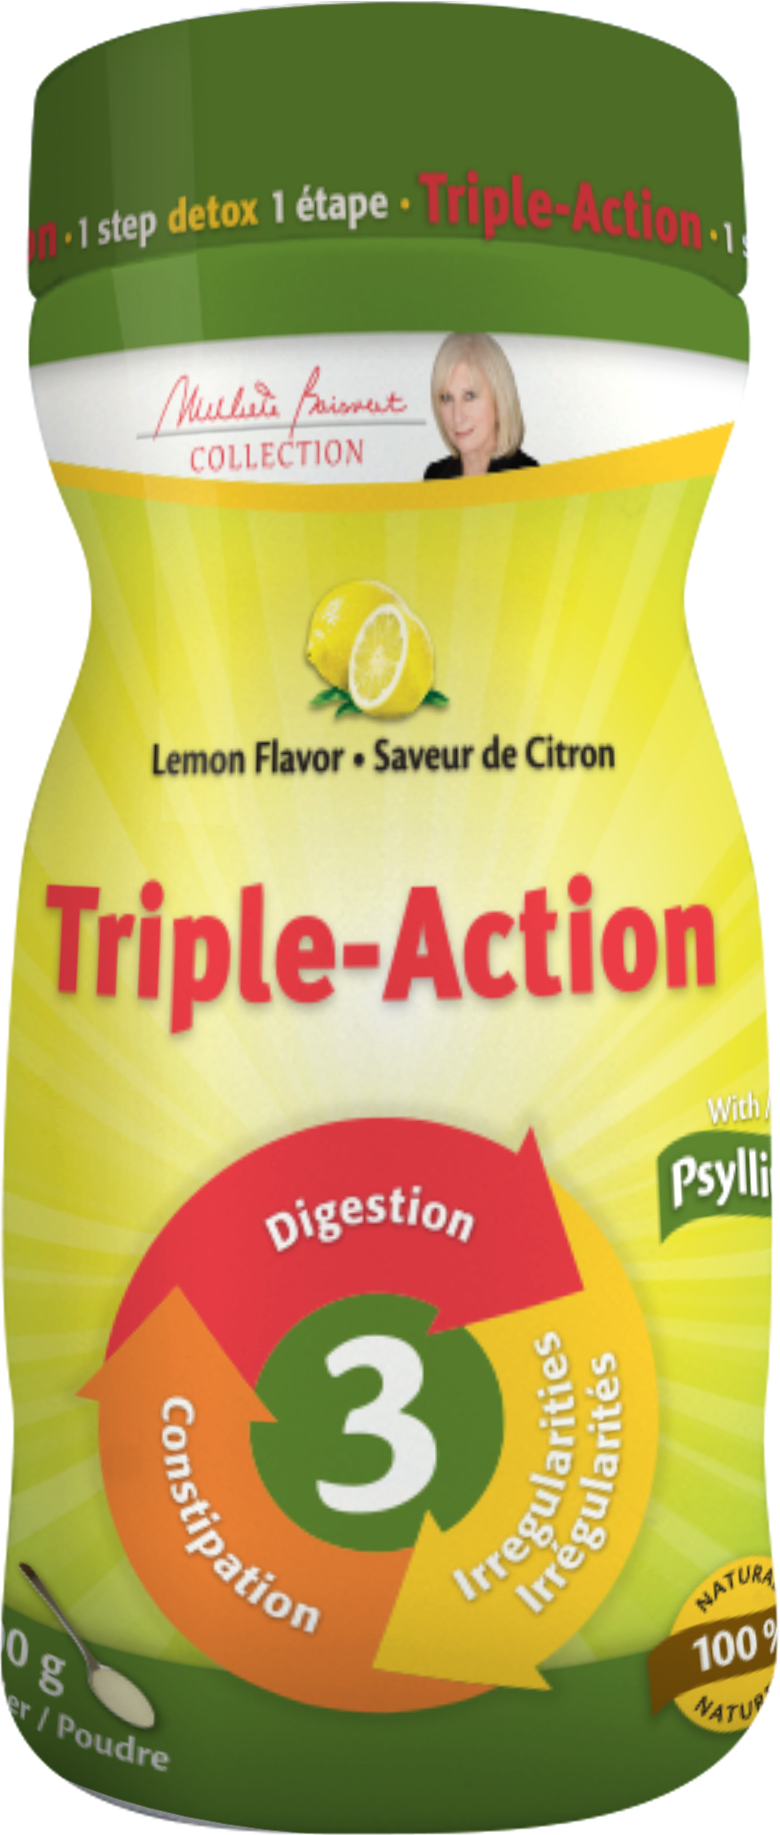 Triple Action (Lemon flavour) 200 g | Michele Boisvert Collection